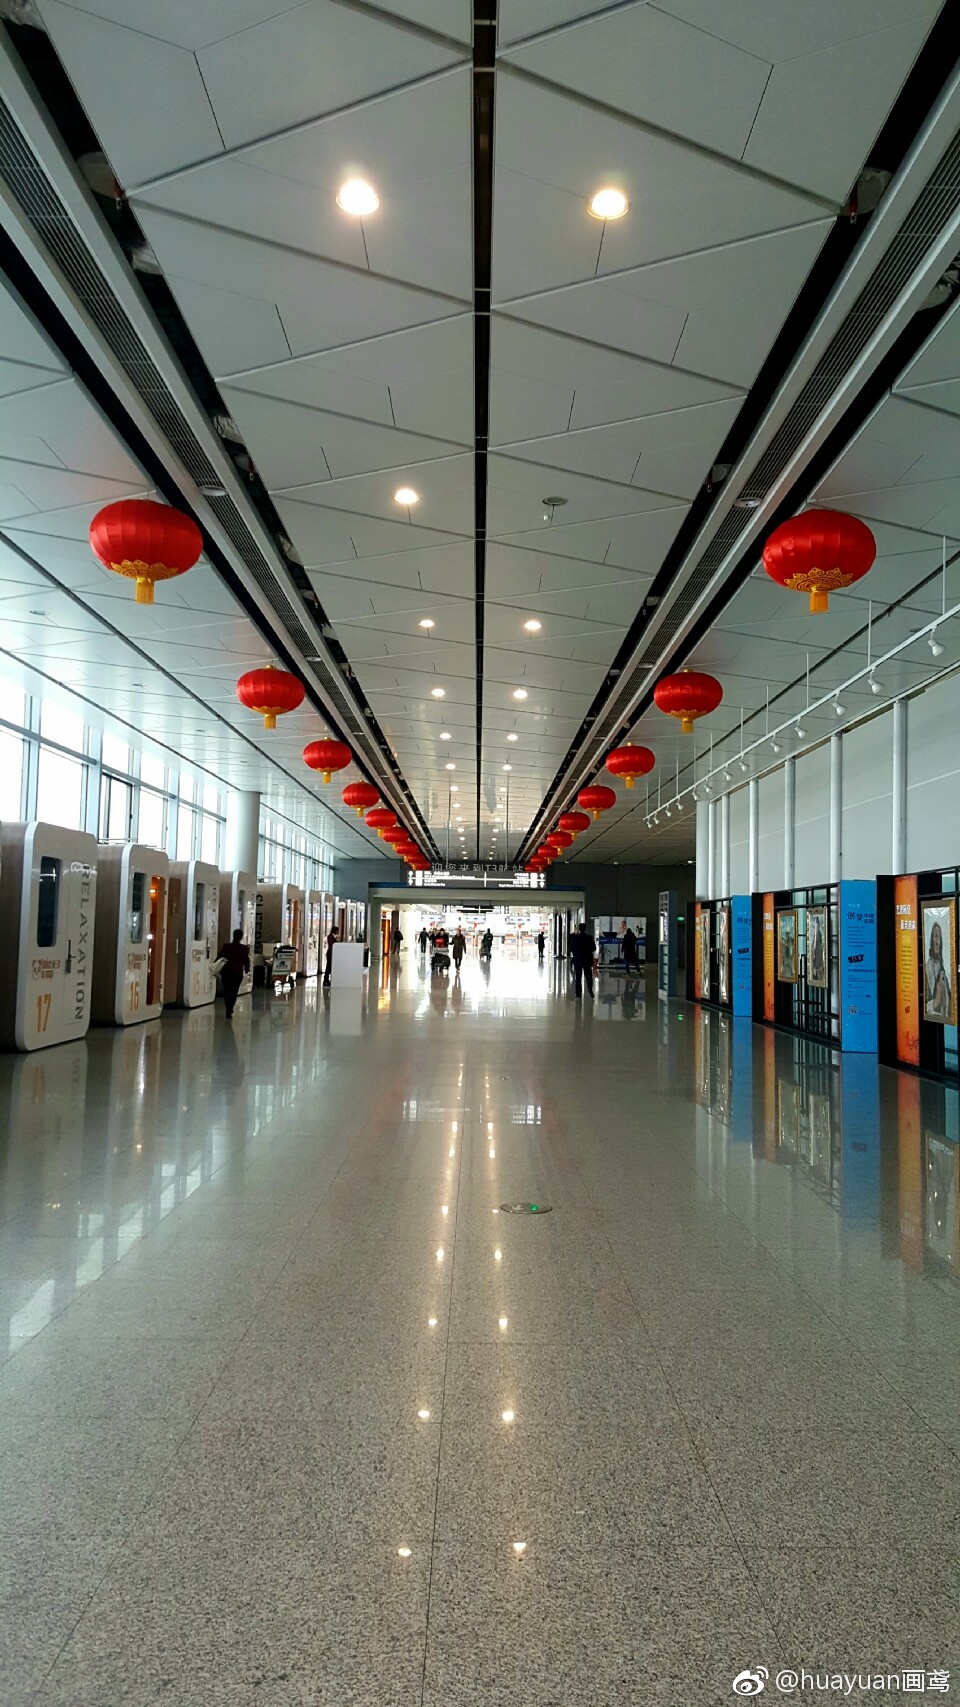 风景再美,也留不住回家的脚步.西安咸阳国际机场手机扫一圈